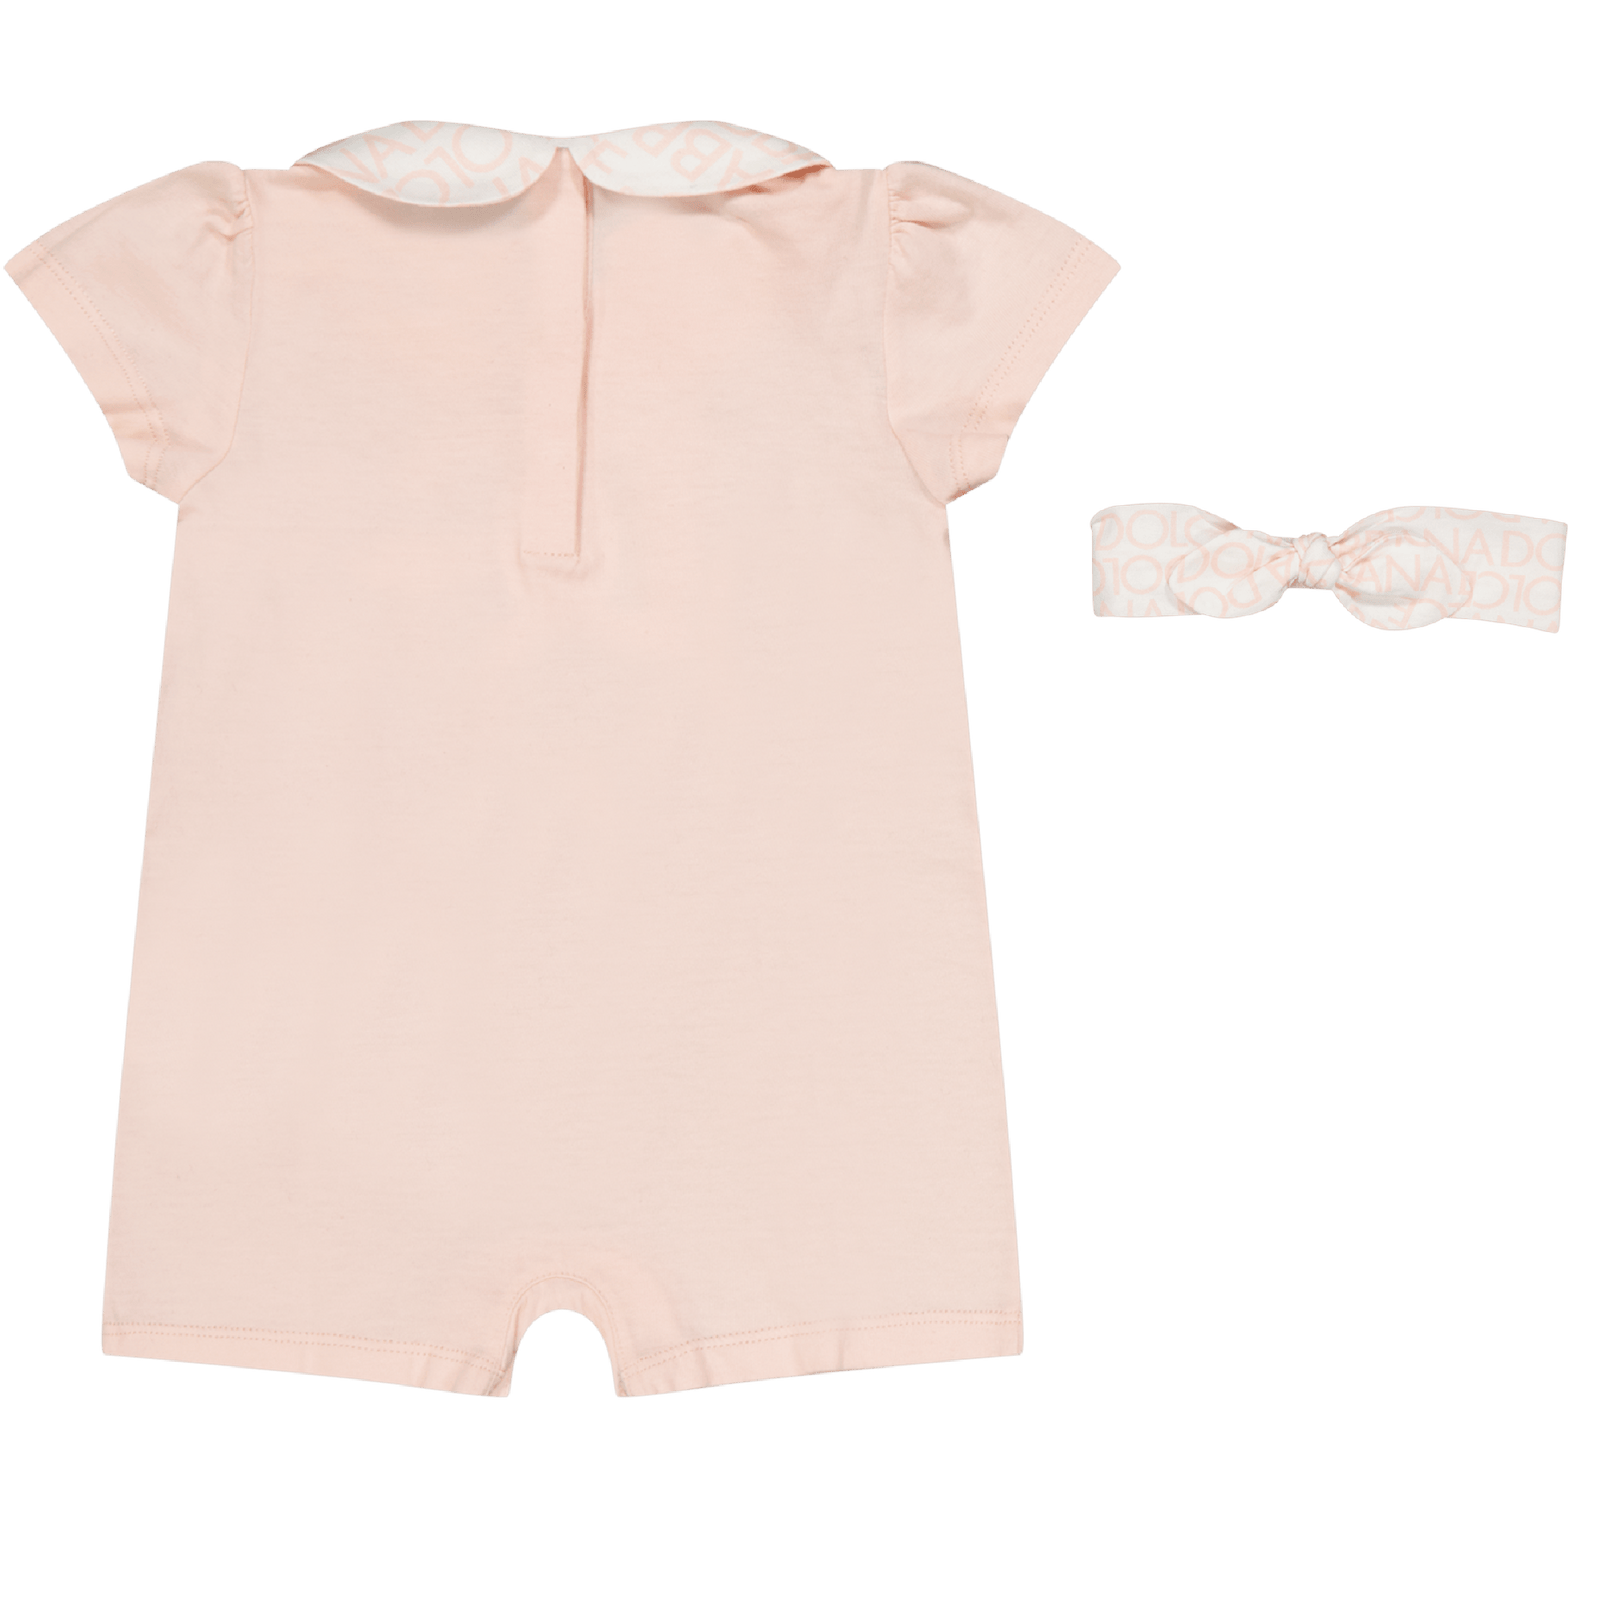 Dolce & Gabbana Baby Meisjes Boxpakje Licht Roze 0/3